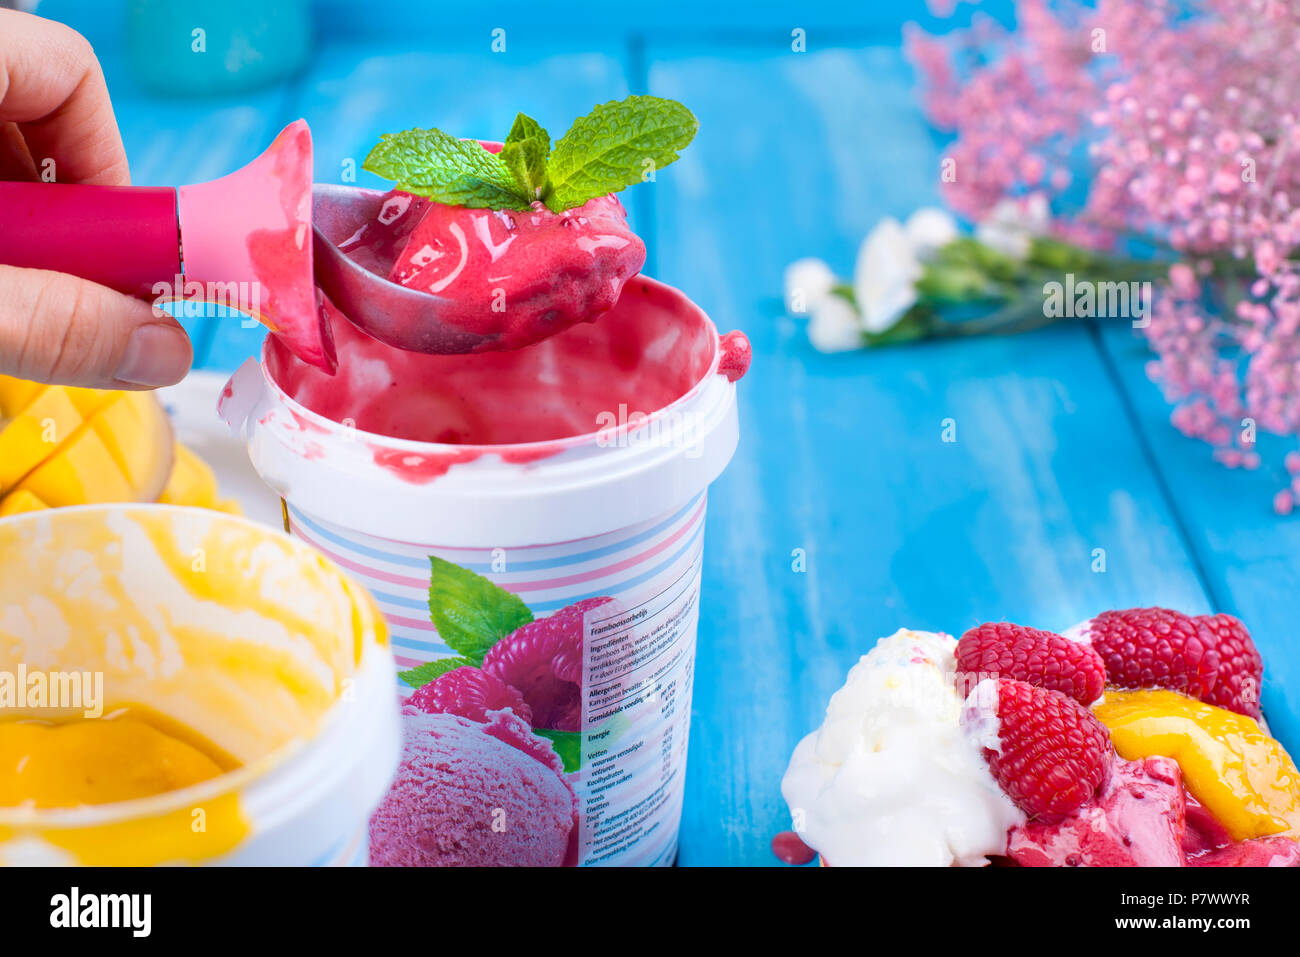 Gelato di frutta con mango e lamponi in una benna pack. Cucchiaio per gelato in mano. Sfondo blu e fiori. Card Foto Stock